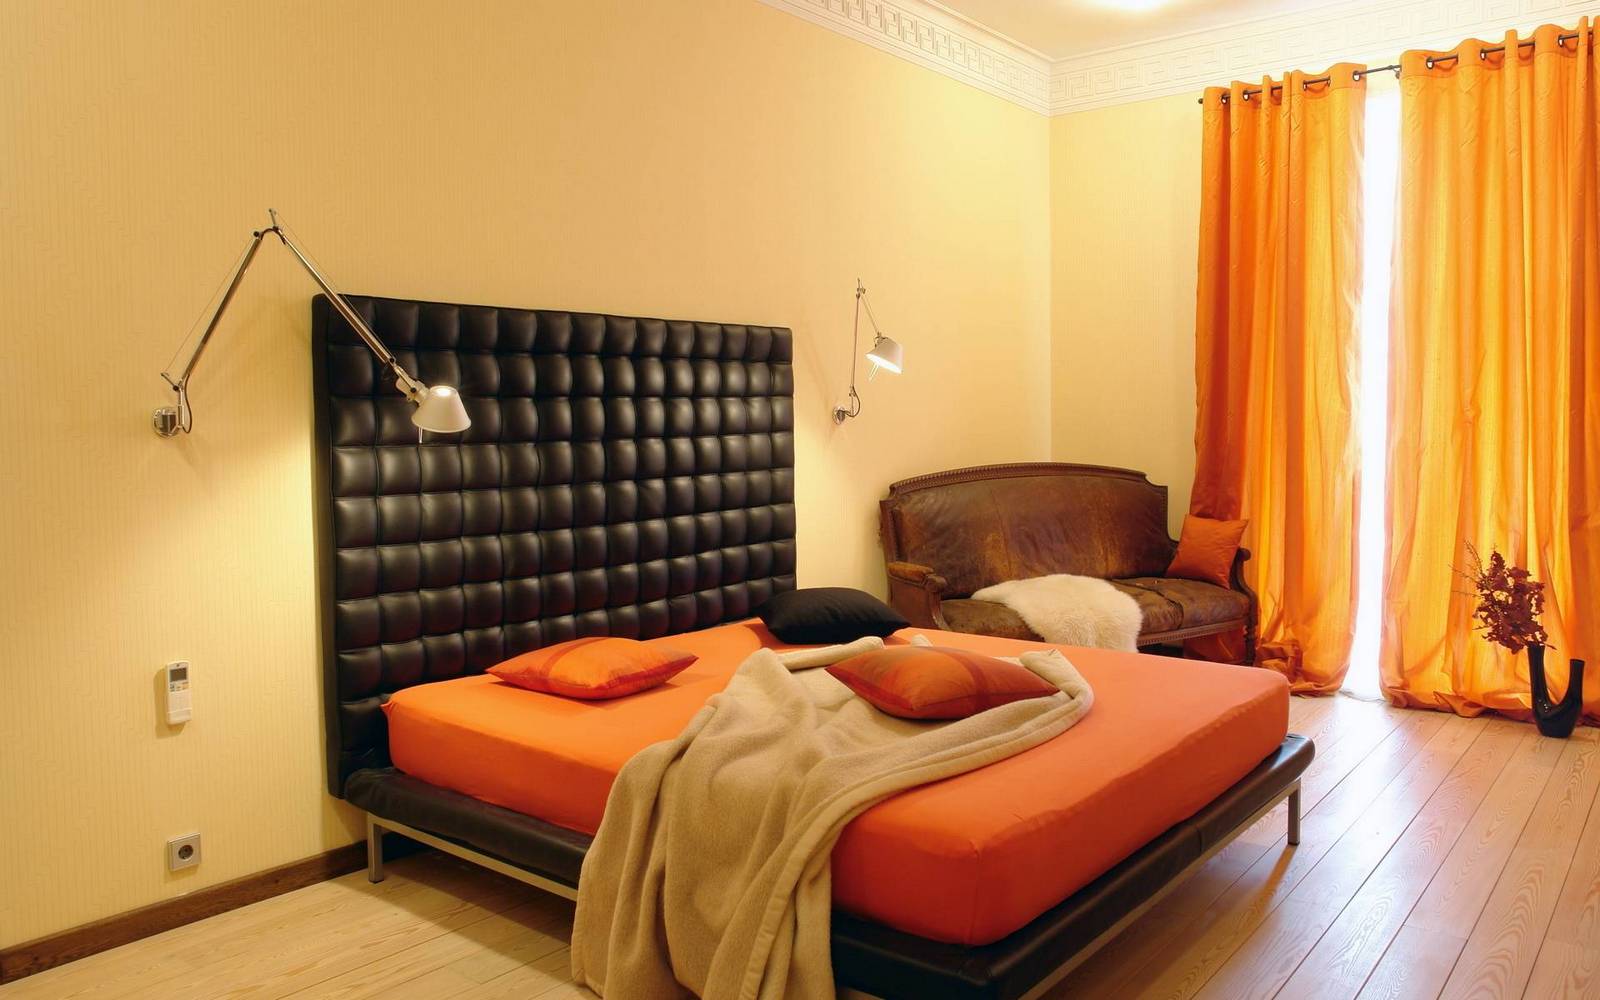 Υπνοδωμάτιο κρέμα πορτοκαλιού με μαύρο κρεβάτι